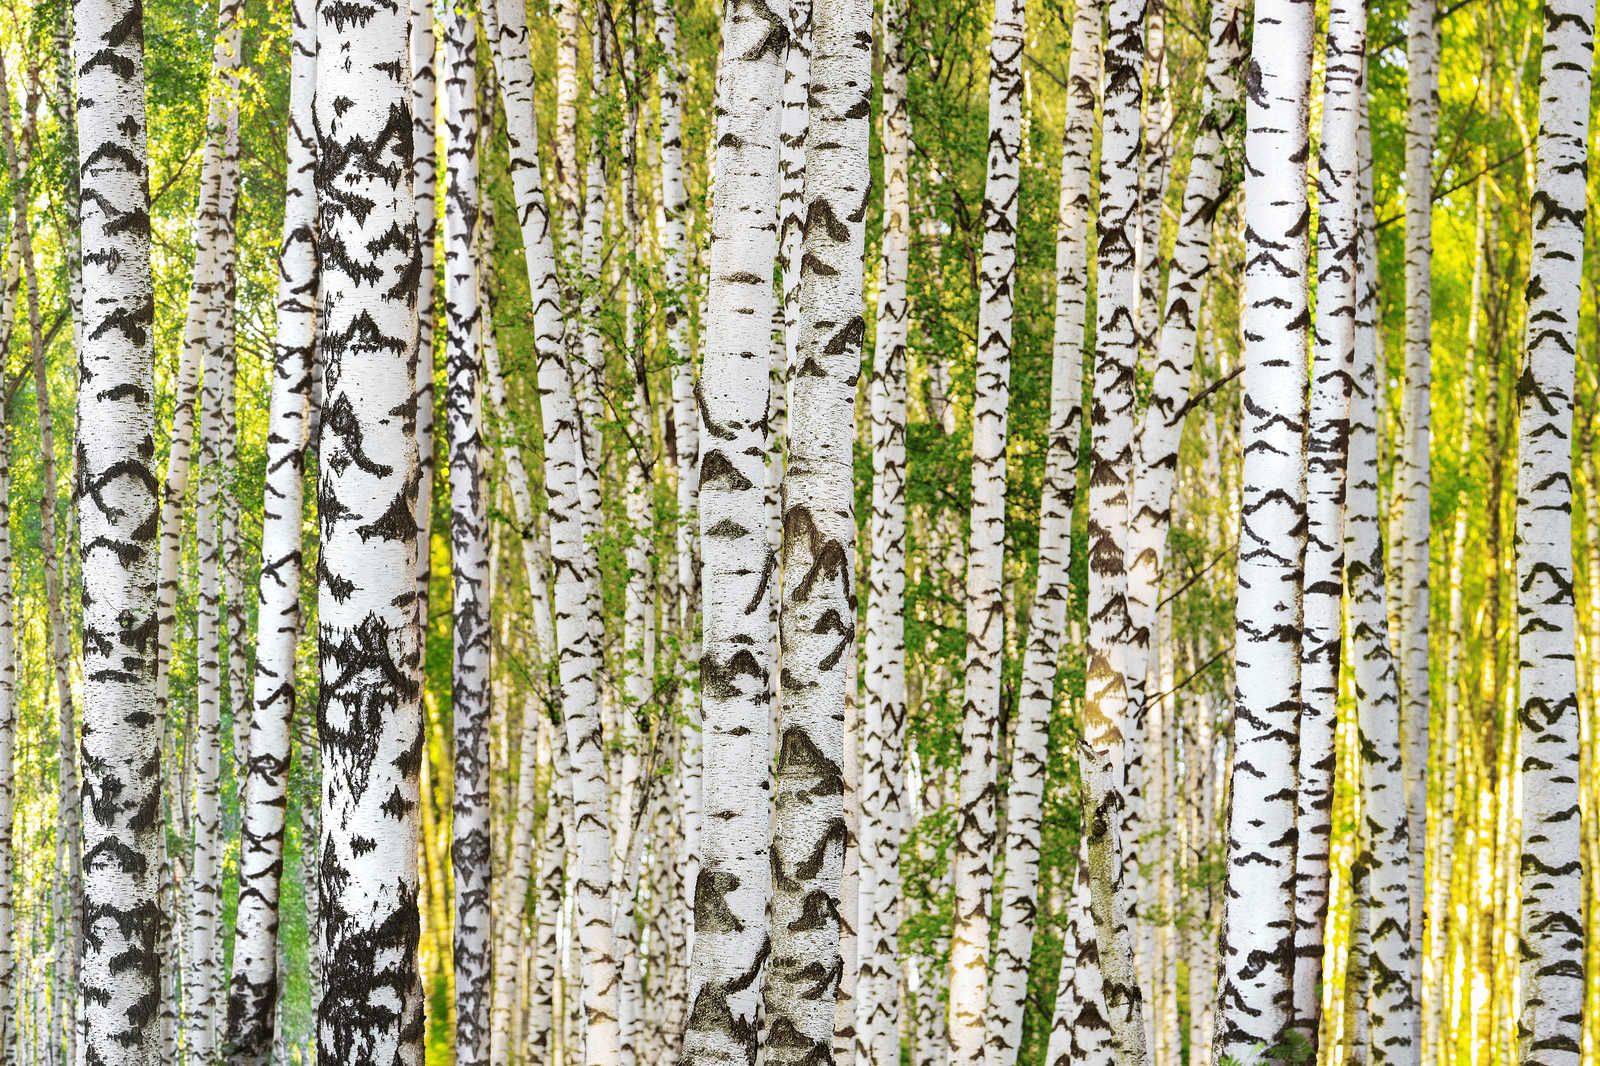             Quadro su tela con motivo a tronco d'albero della foresta di betulle - 0,90 m x 0,60 m
        